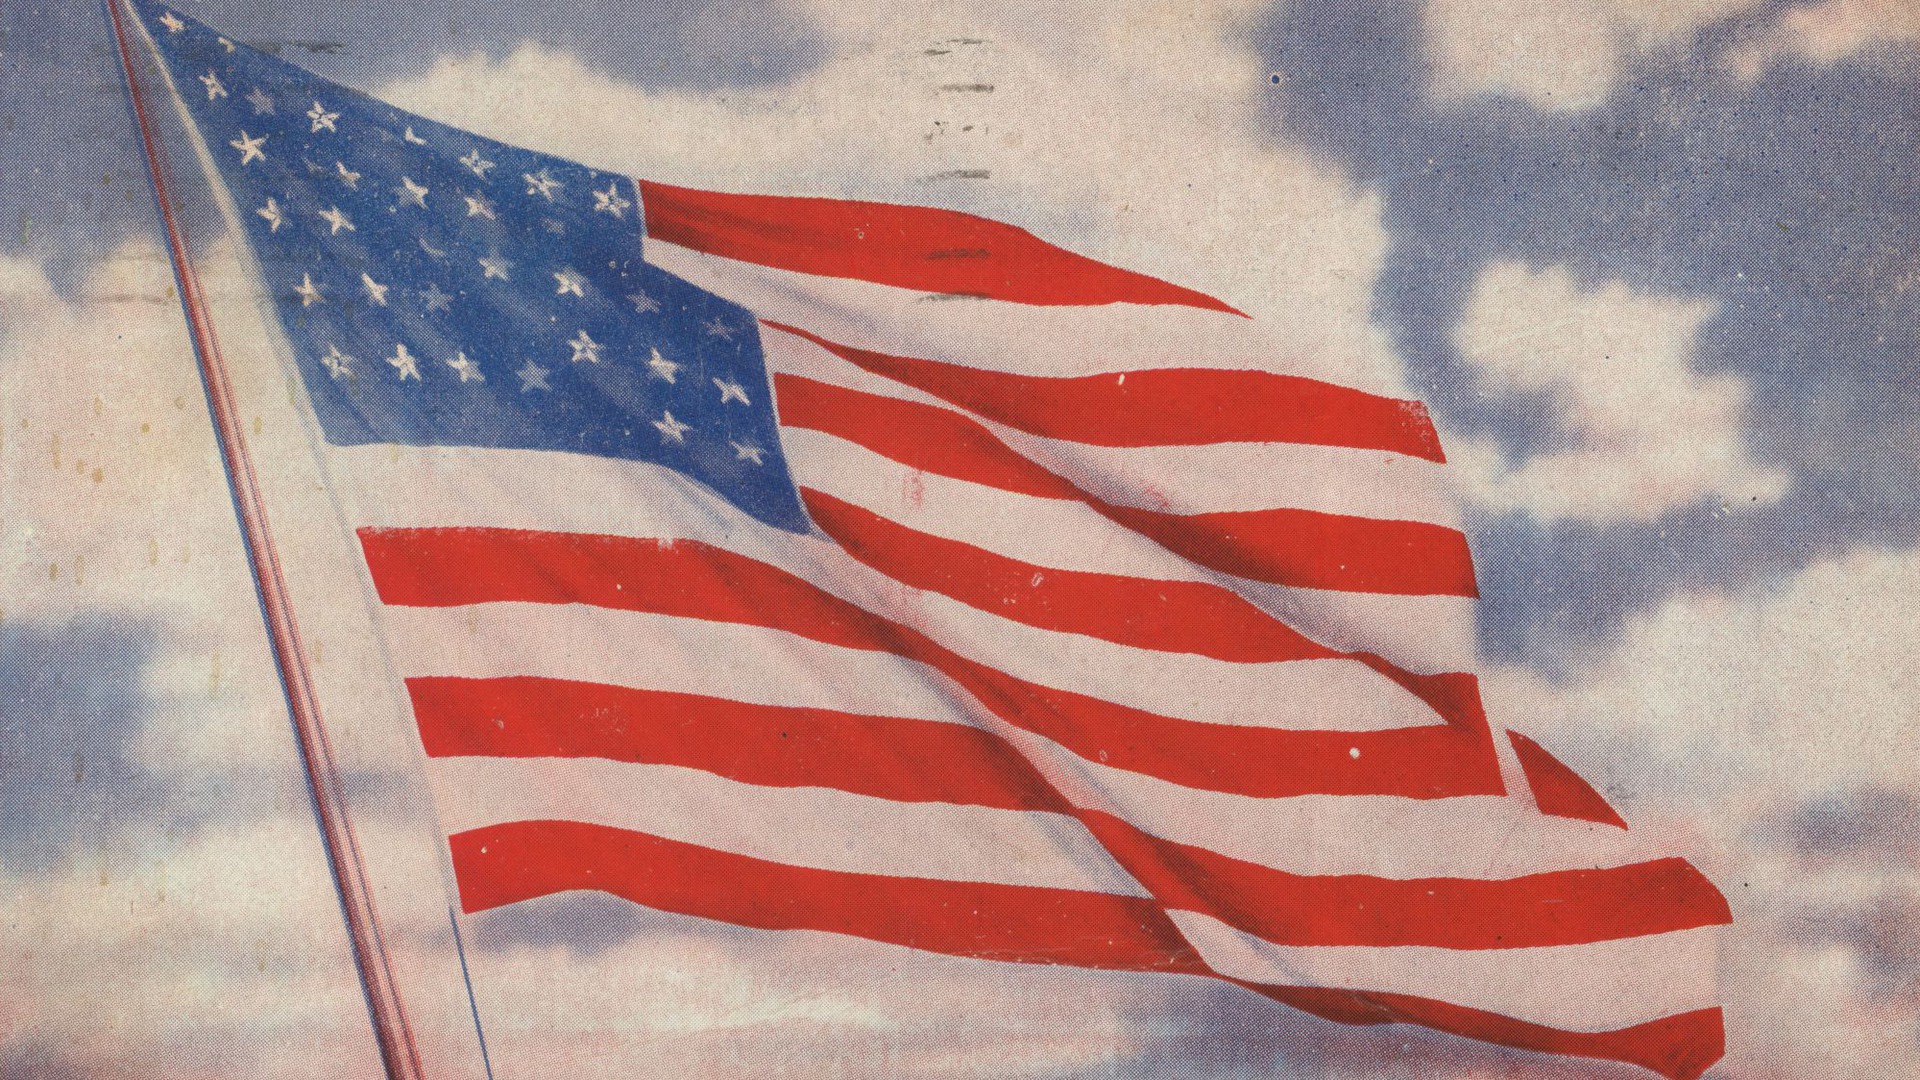 Målning av den amerikanska flaggan mot en blå himmel med vita moln.